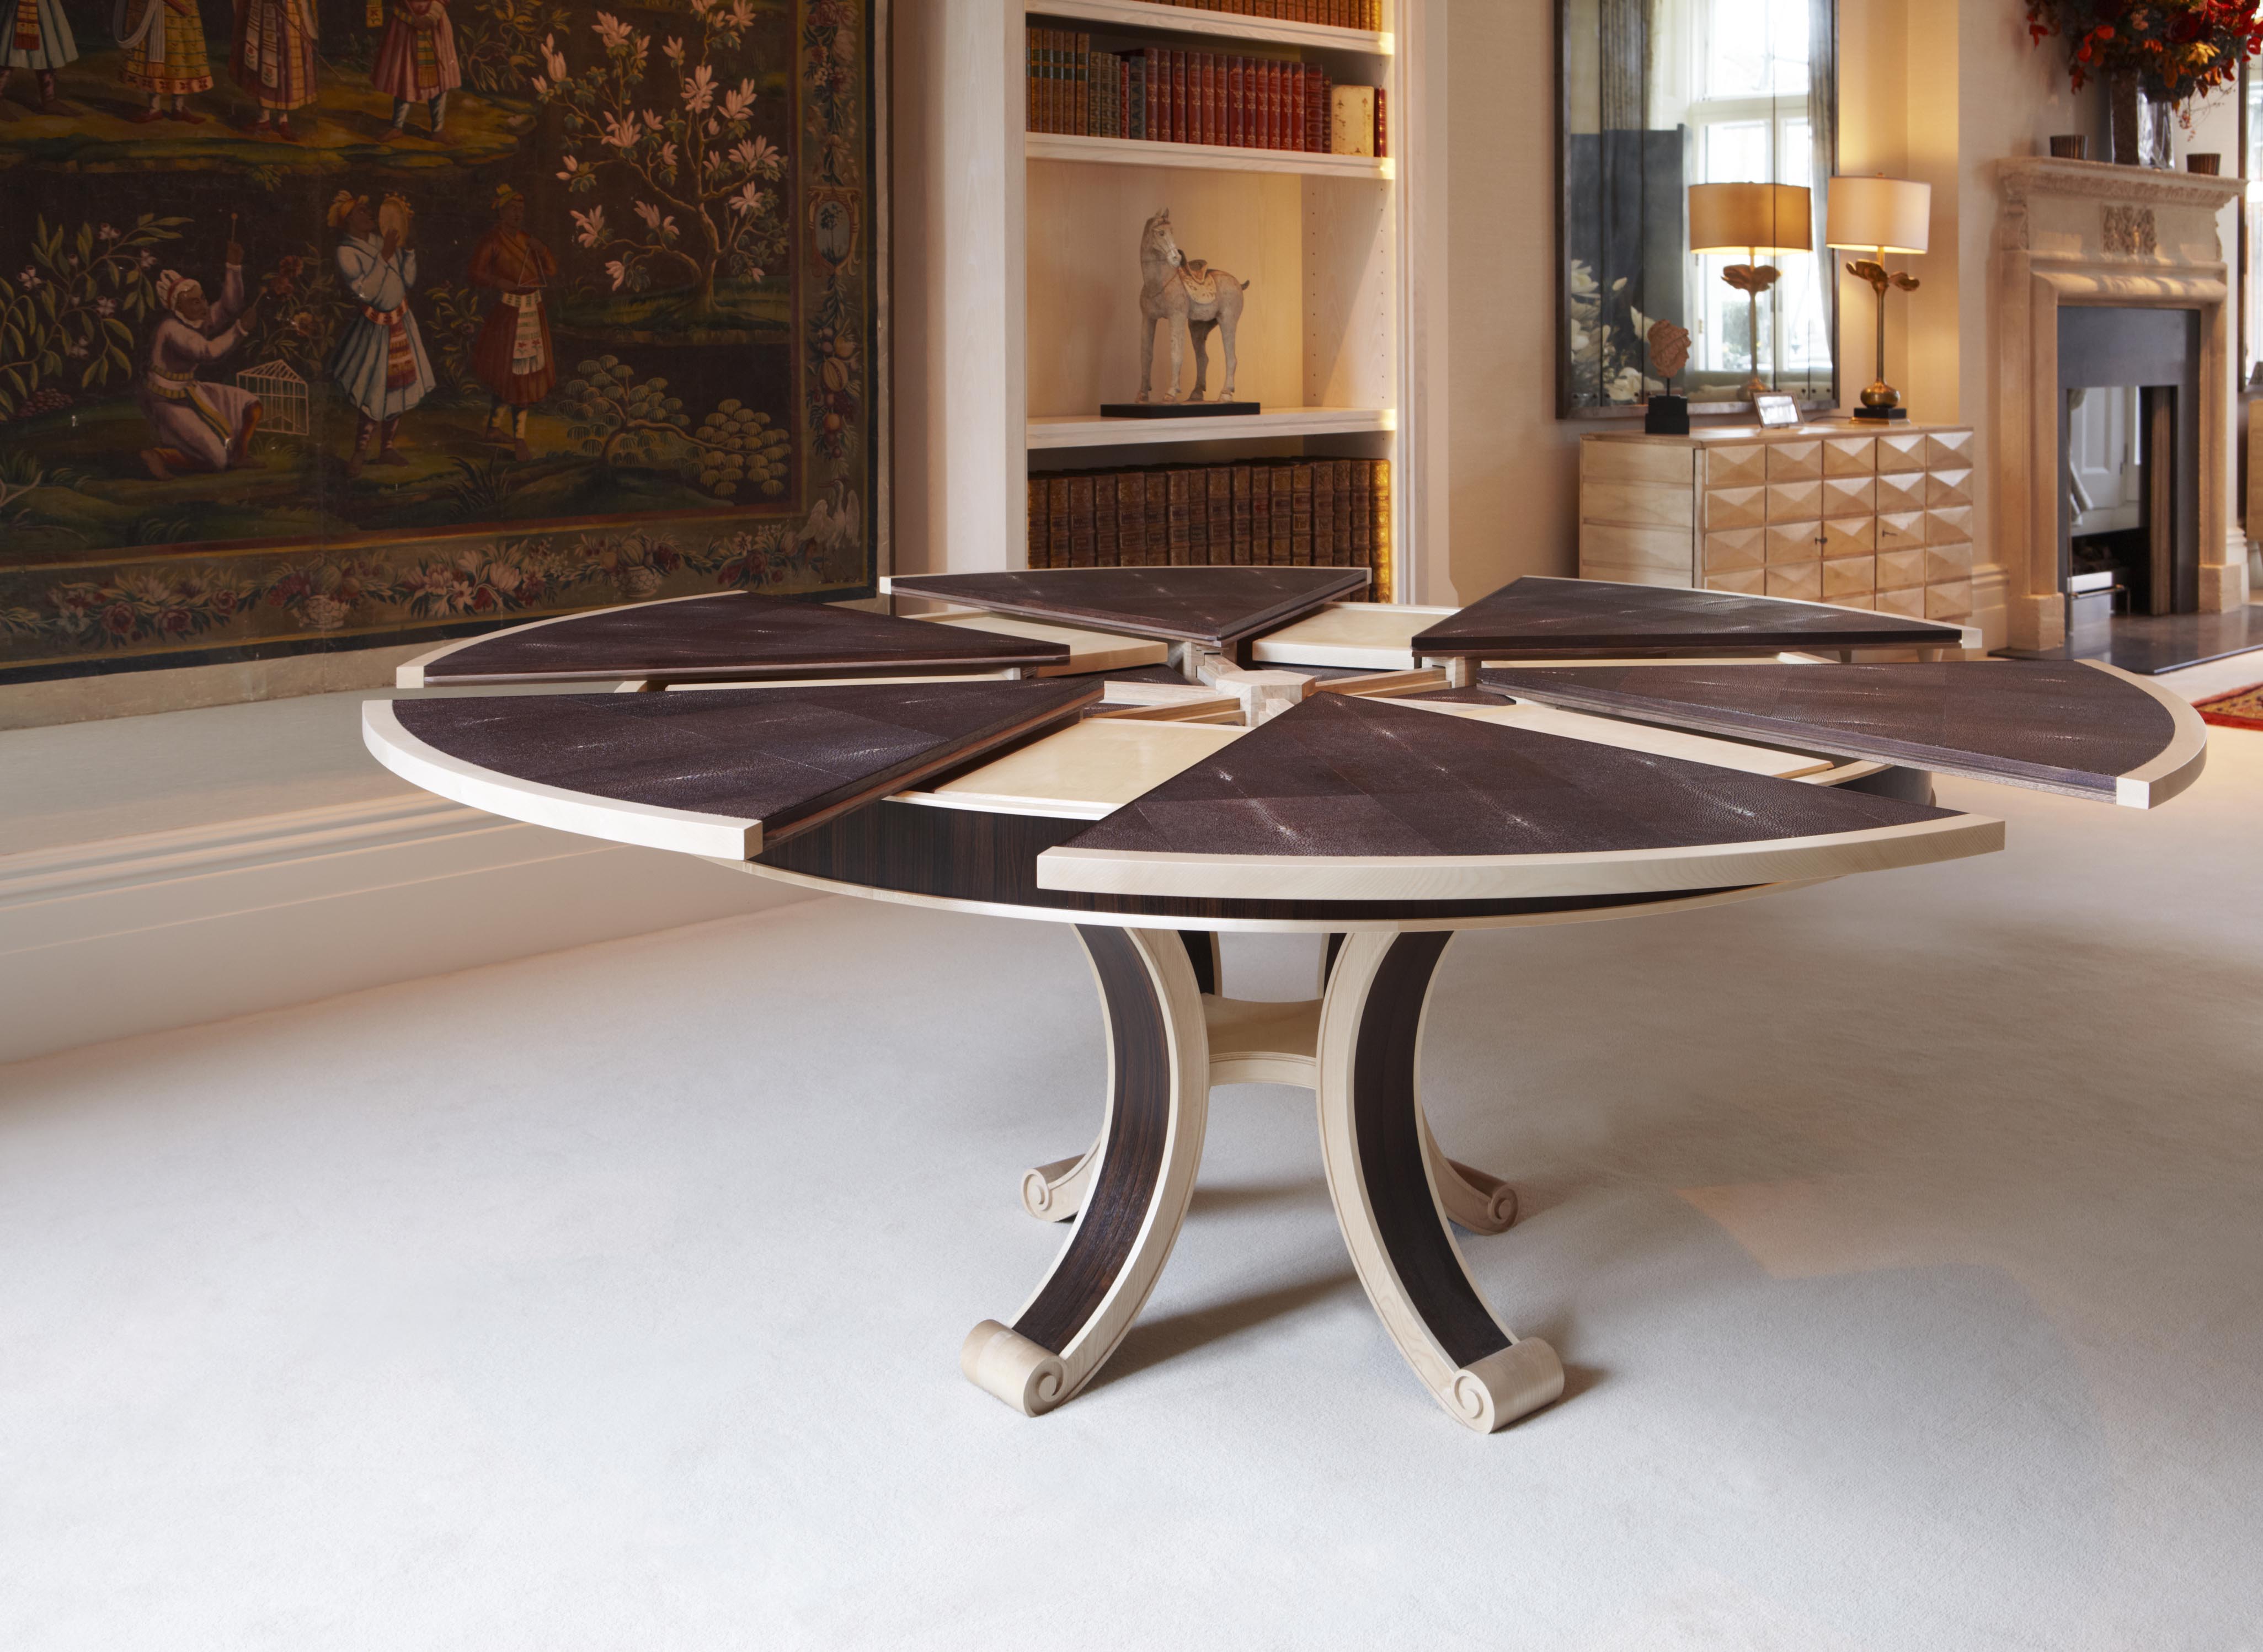 A Circular Expanding Dining Table. | British Institute of Interior Design